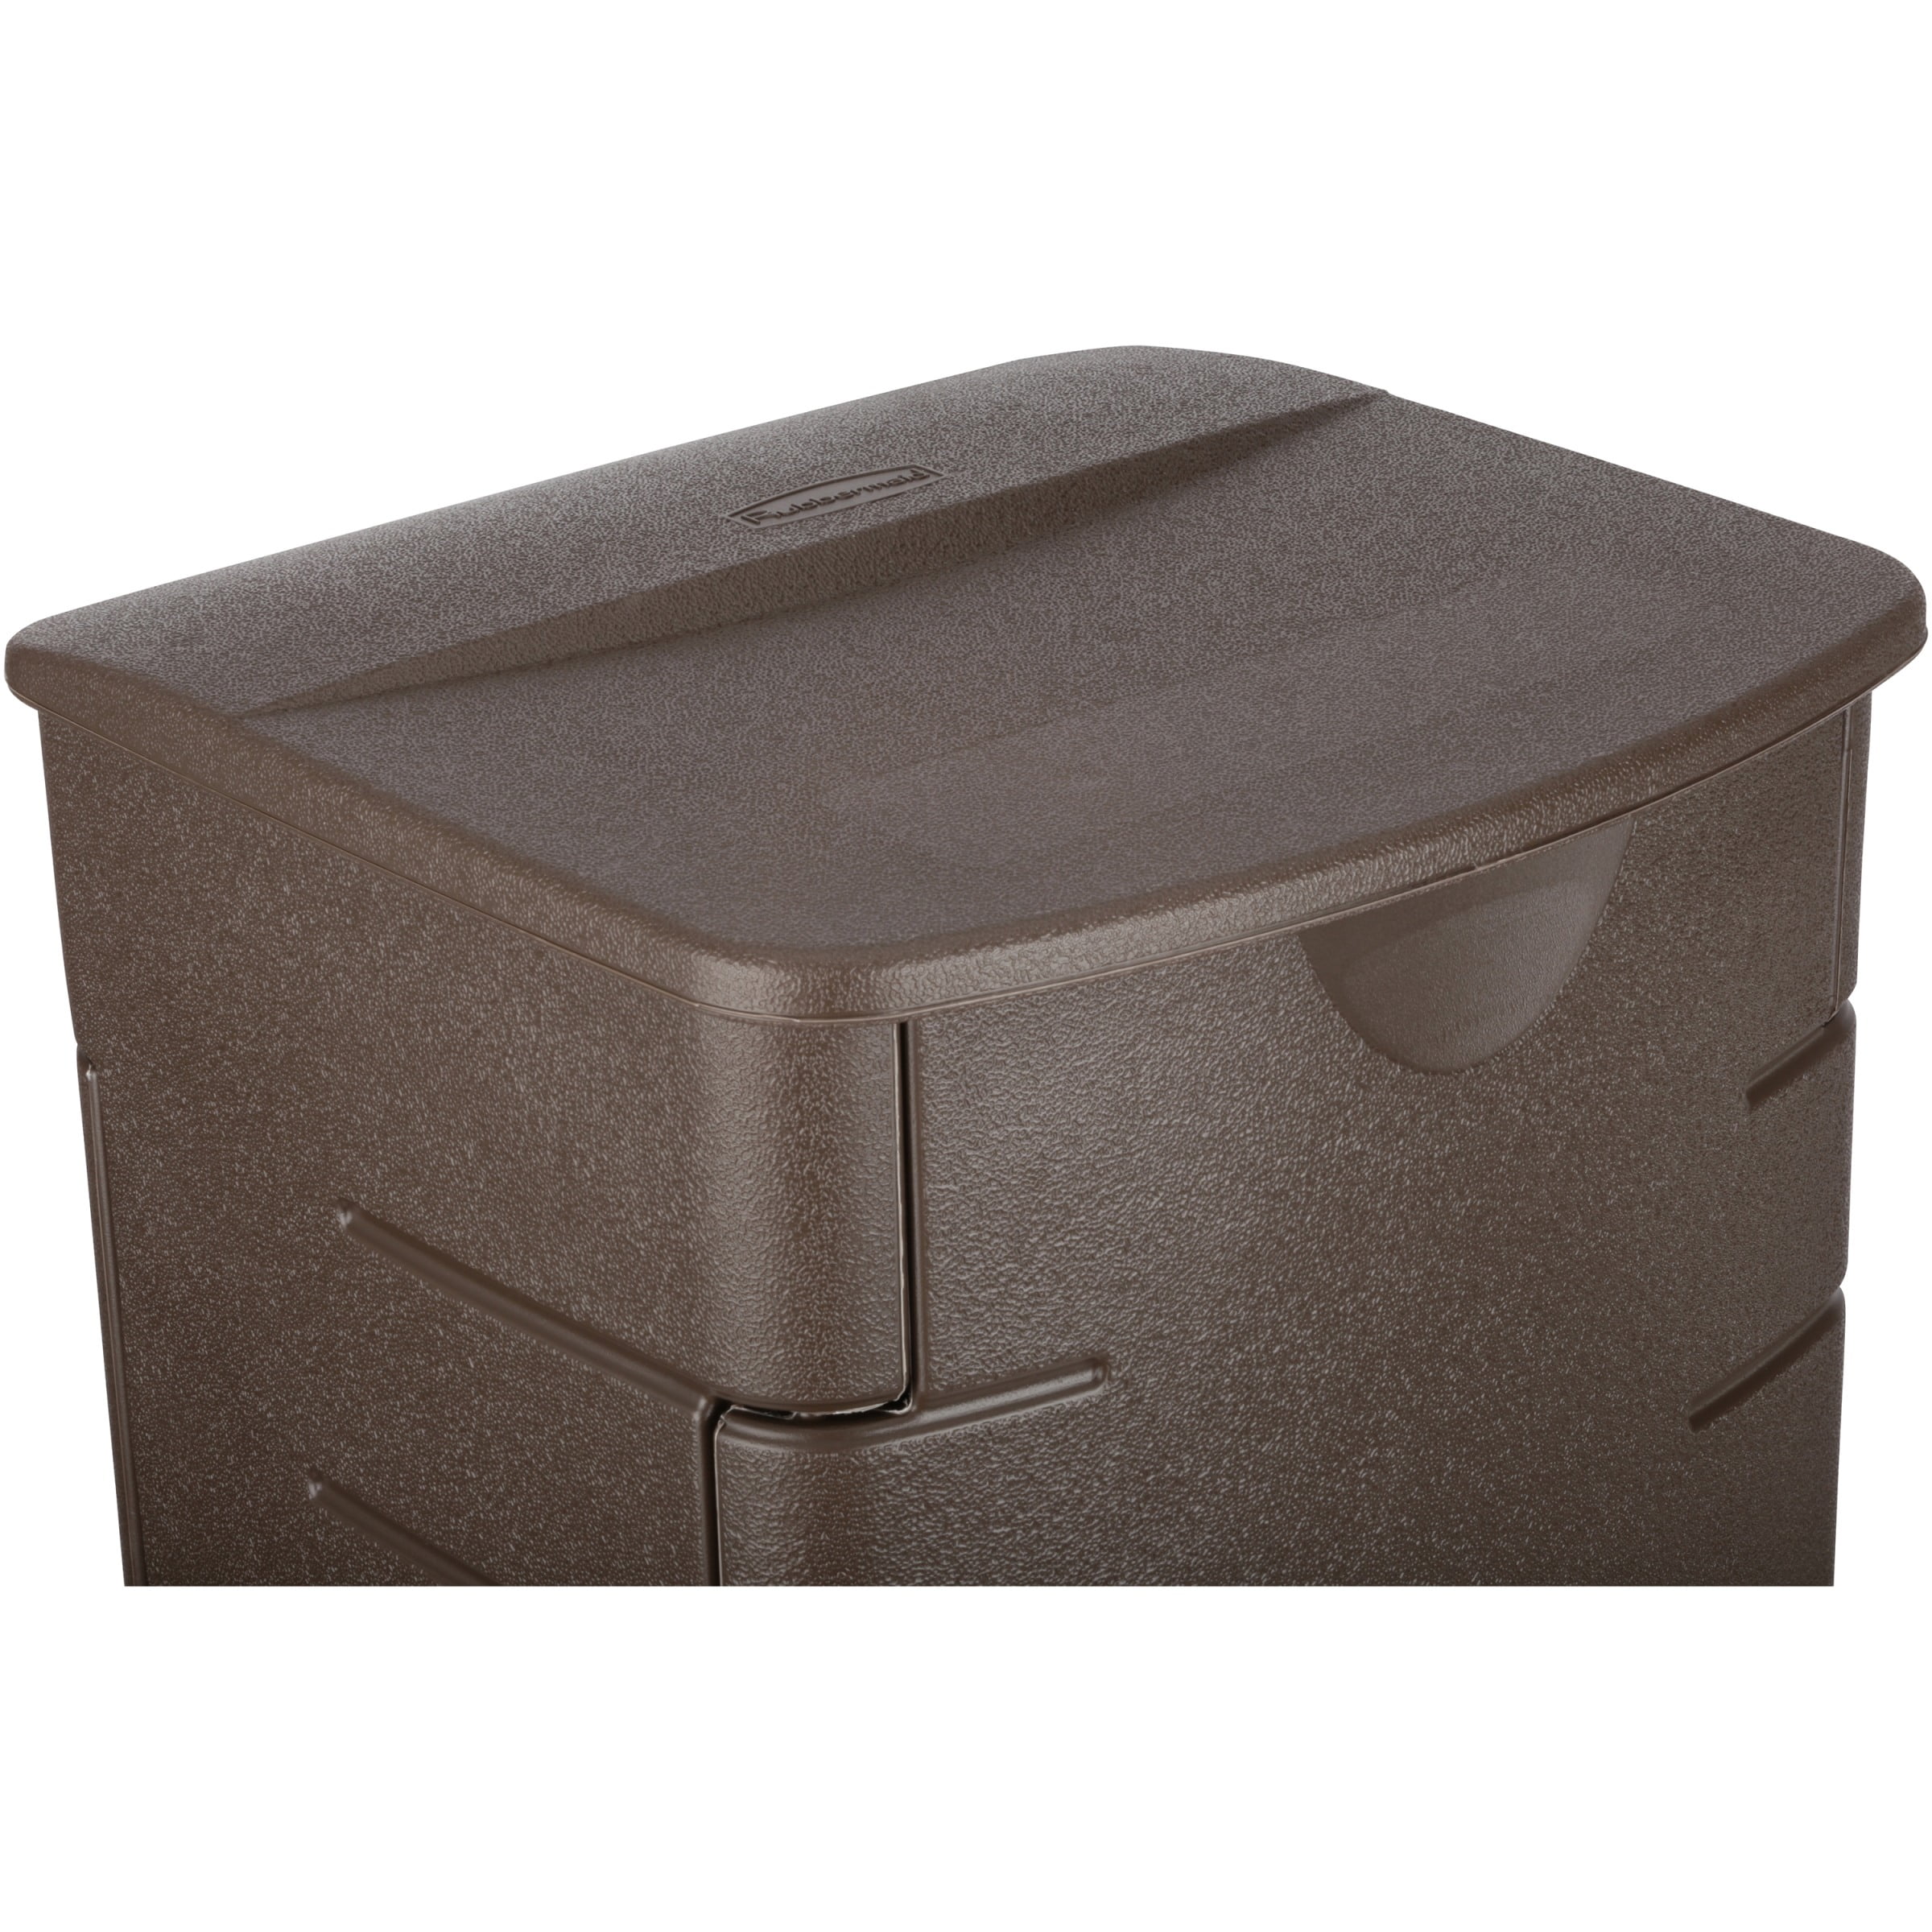 Rubbermaid Outdoor Upright Mini Deck Box, Mocha, 19.2 Gallon